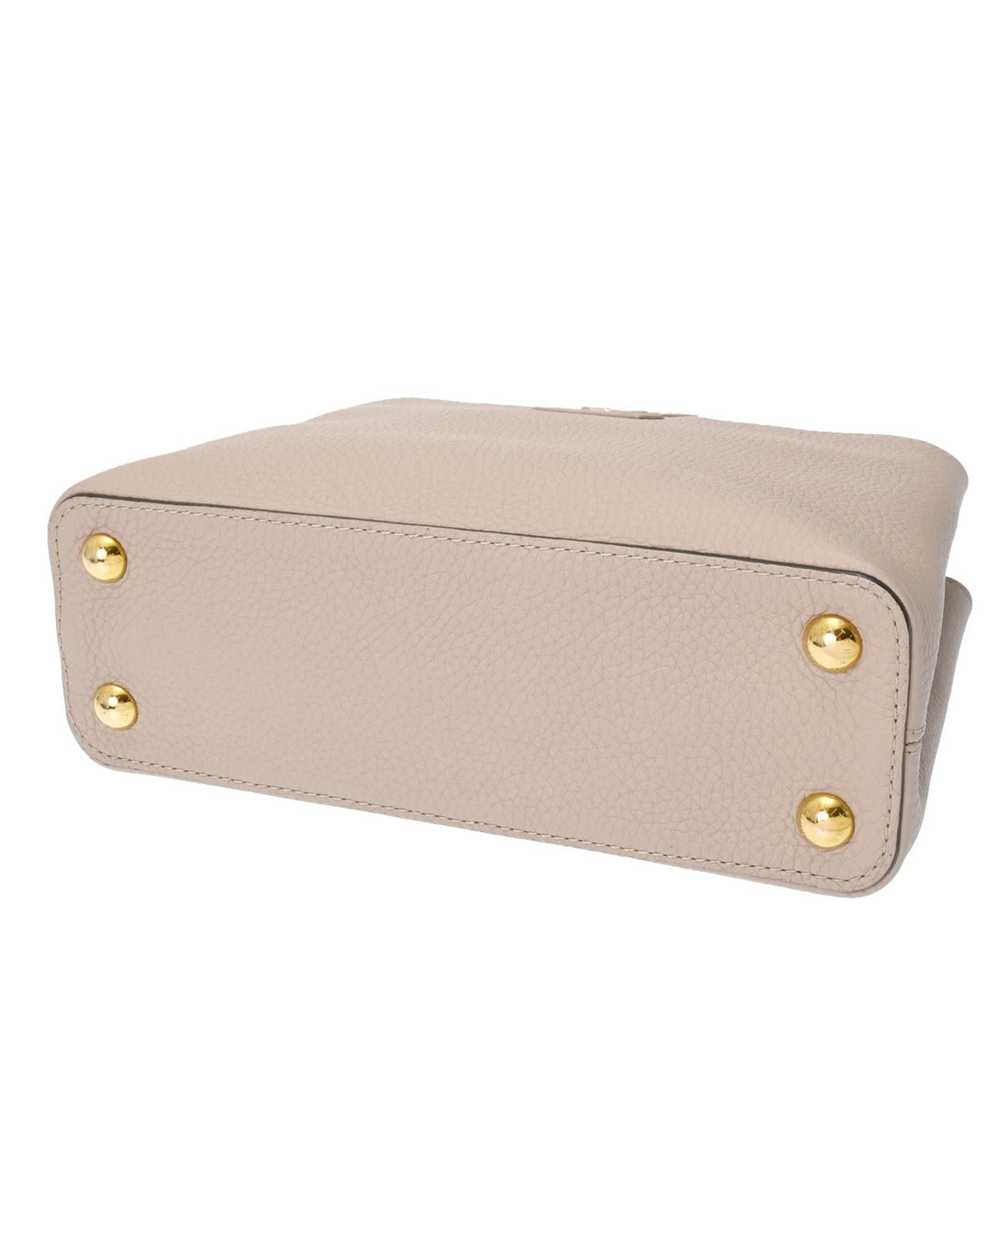 Louis Vuitton Sophisticated Leather Flap Handbag - image 5